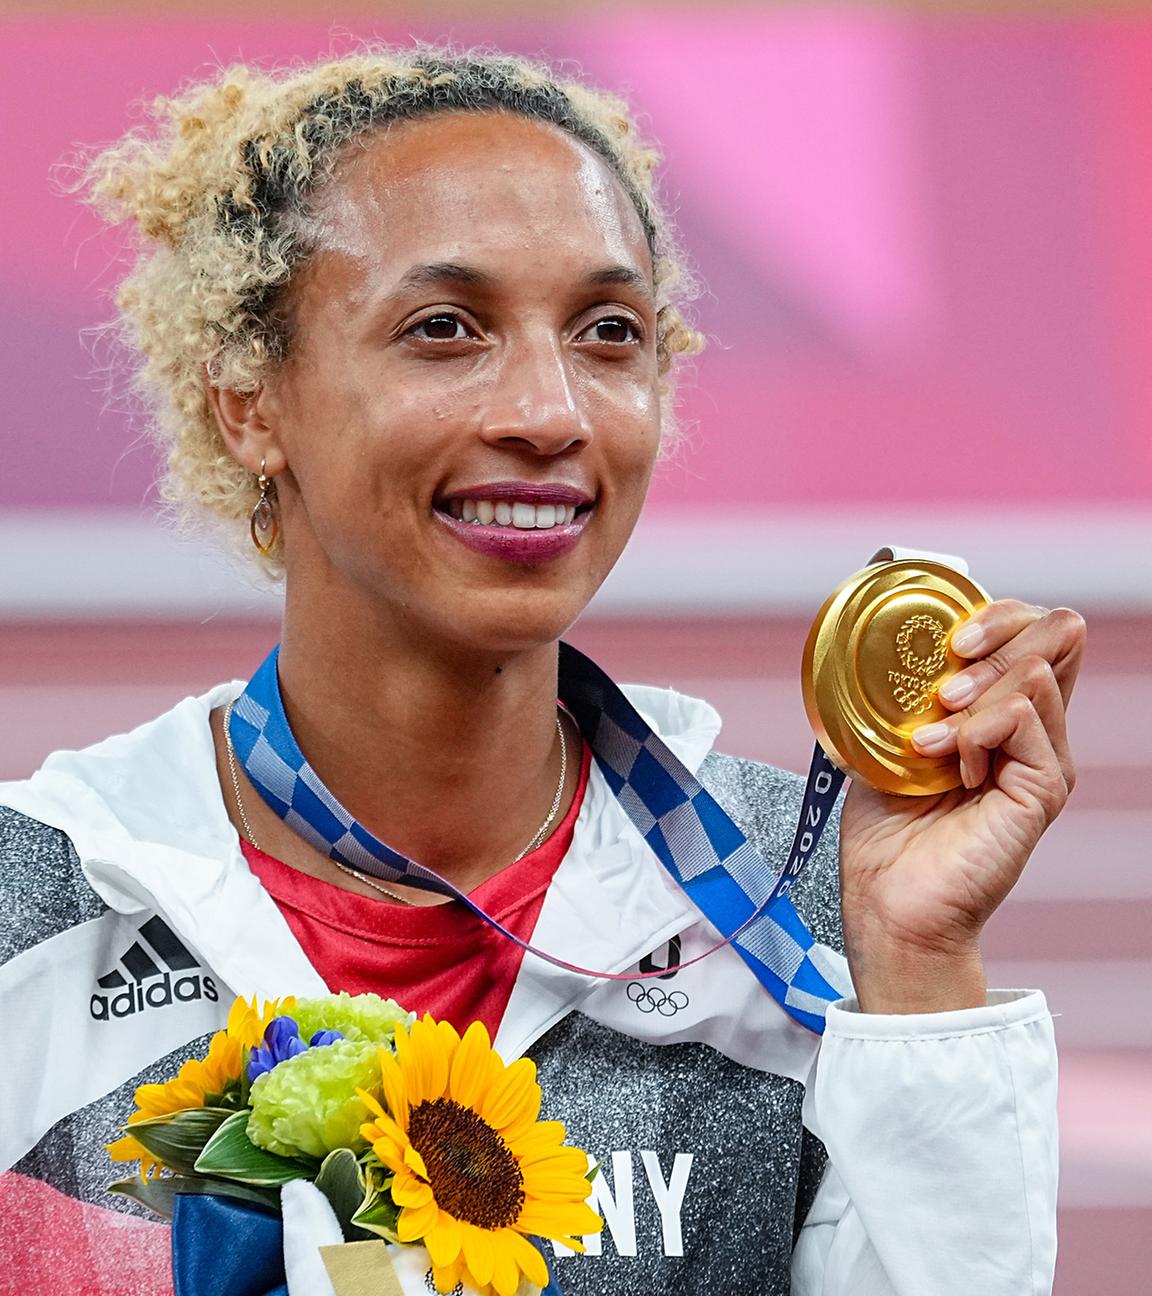 Malaika Mihambo aus Deutschland mit Goldmedaille bei der Siegerehrung, aufgenommen am 03.08.2021 in Tokio (Japan)